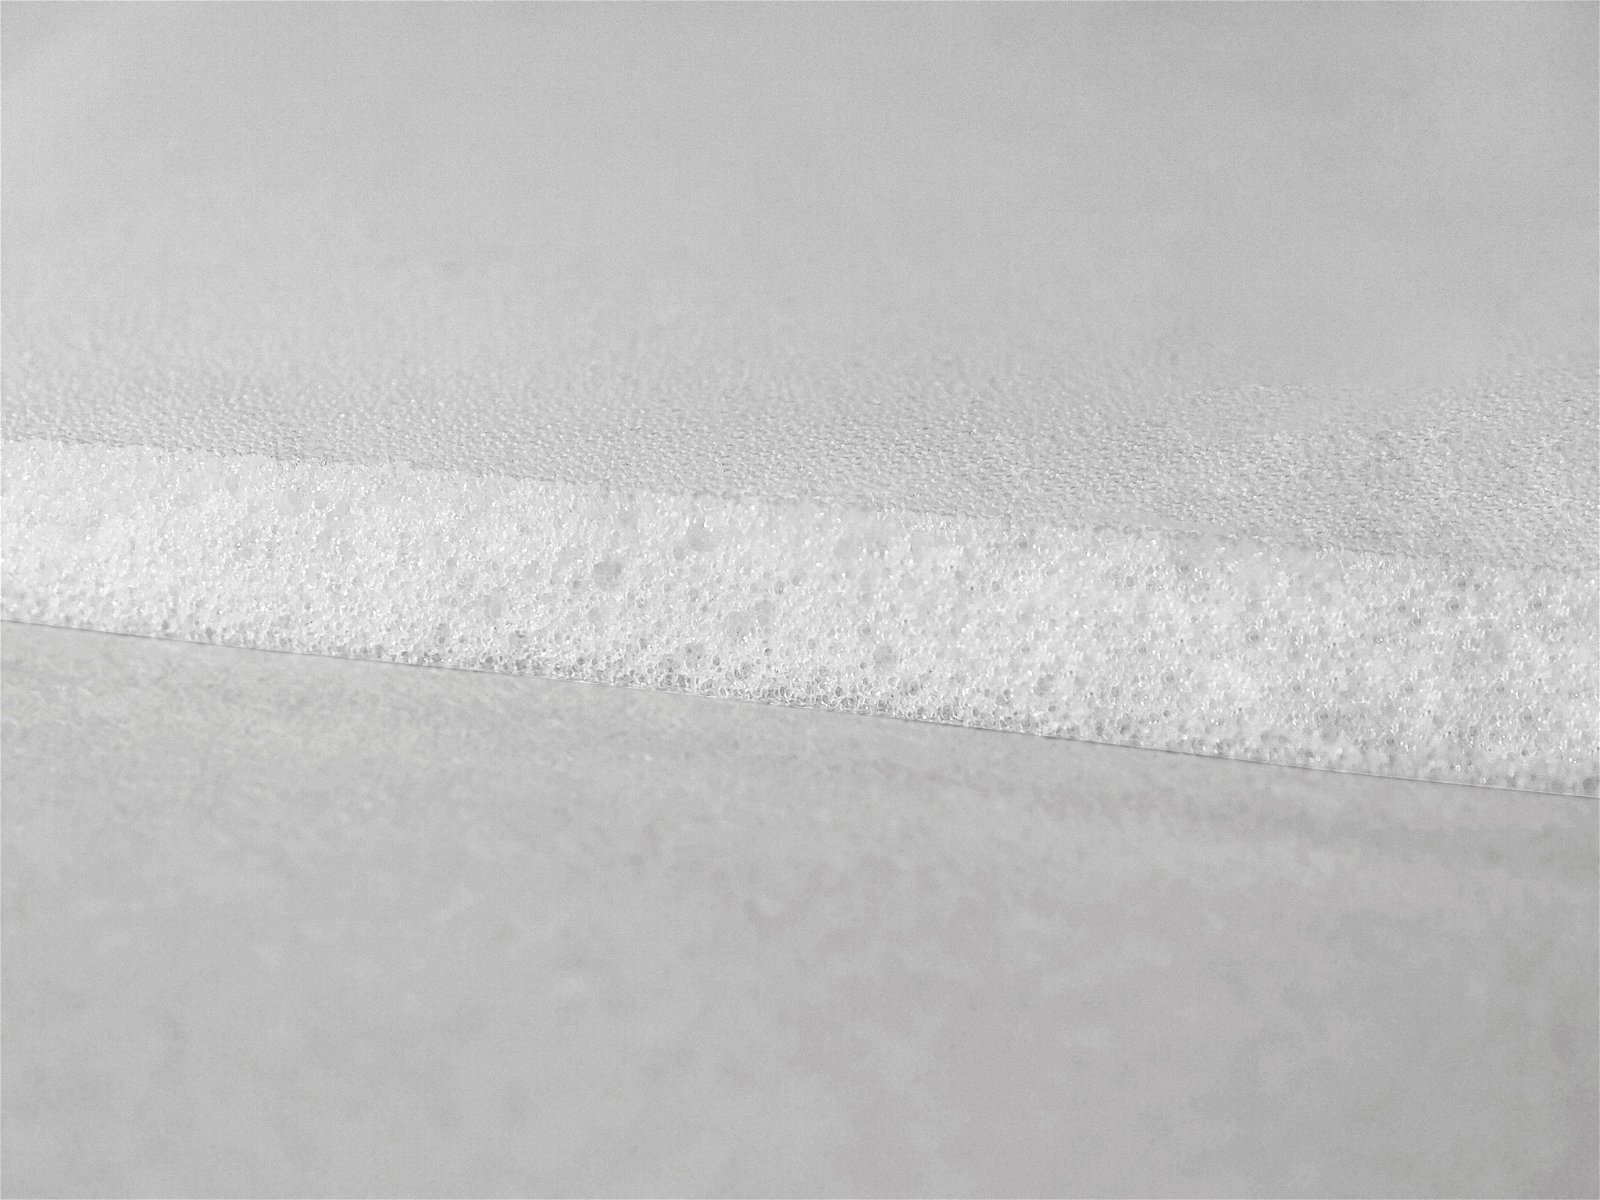 TPU 超臨界物理髮泡板材熱塑性聚氨酯彈性體微孔發泡板材